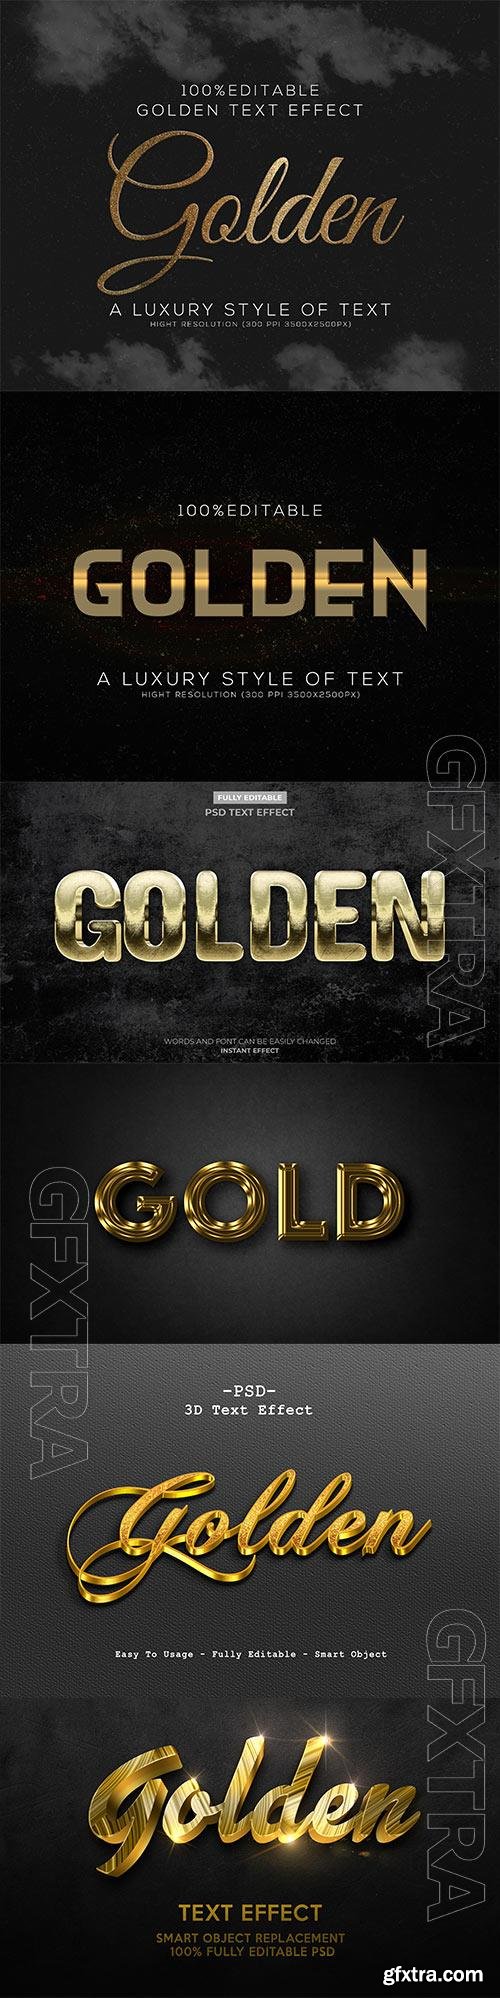 Golden 3d text style effect template psd